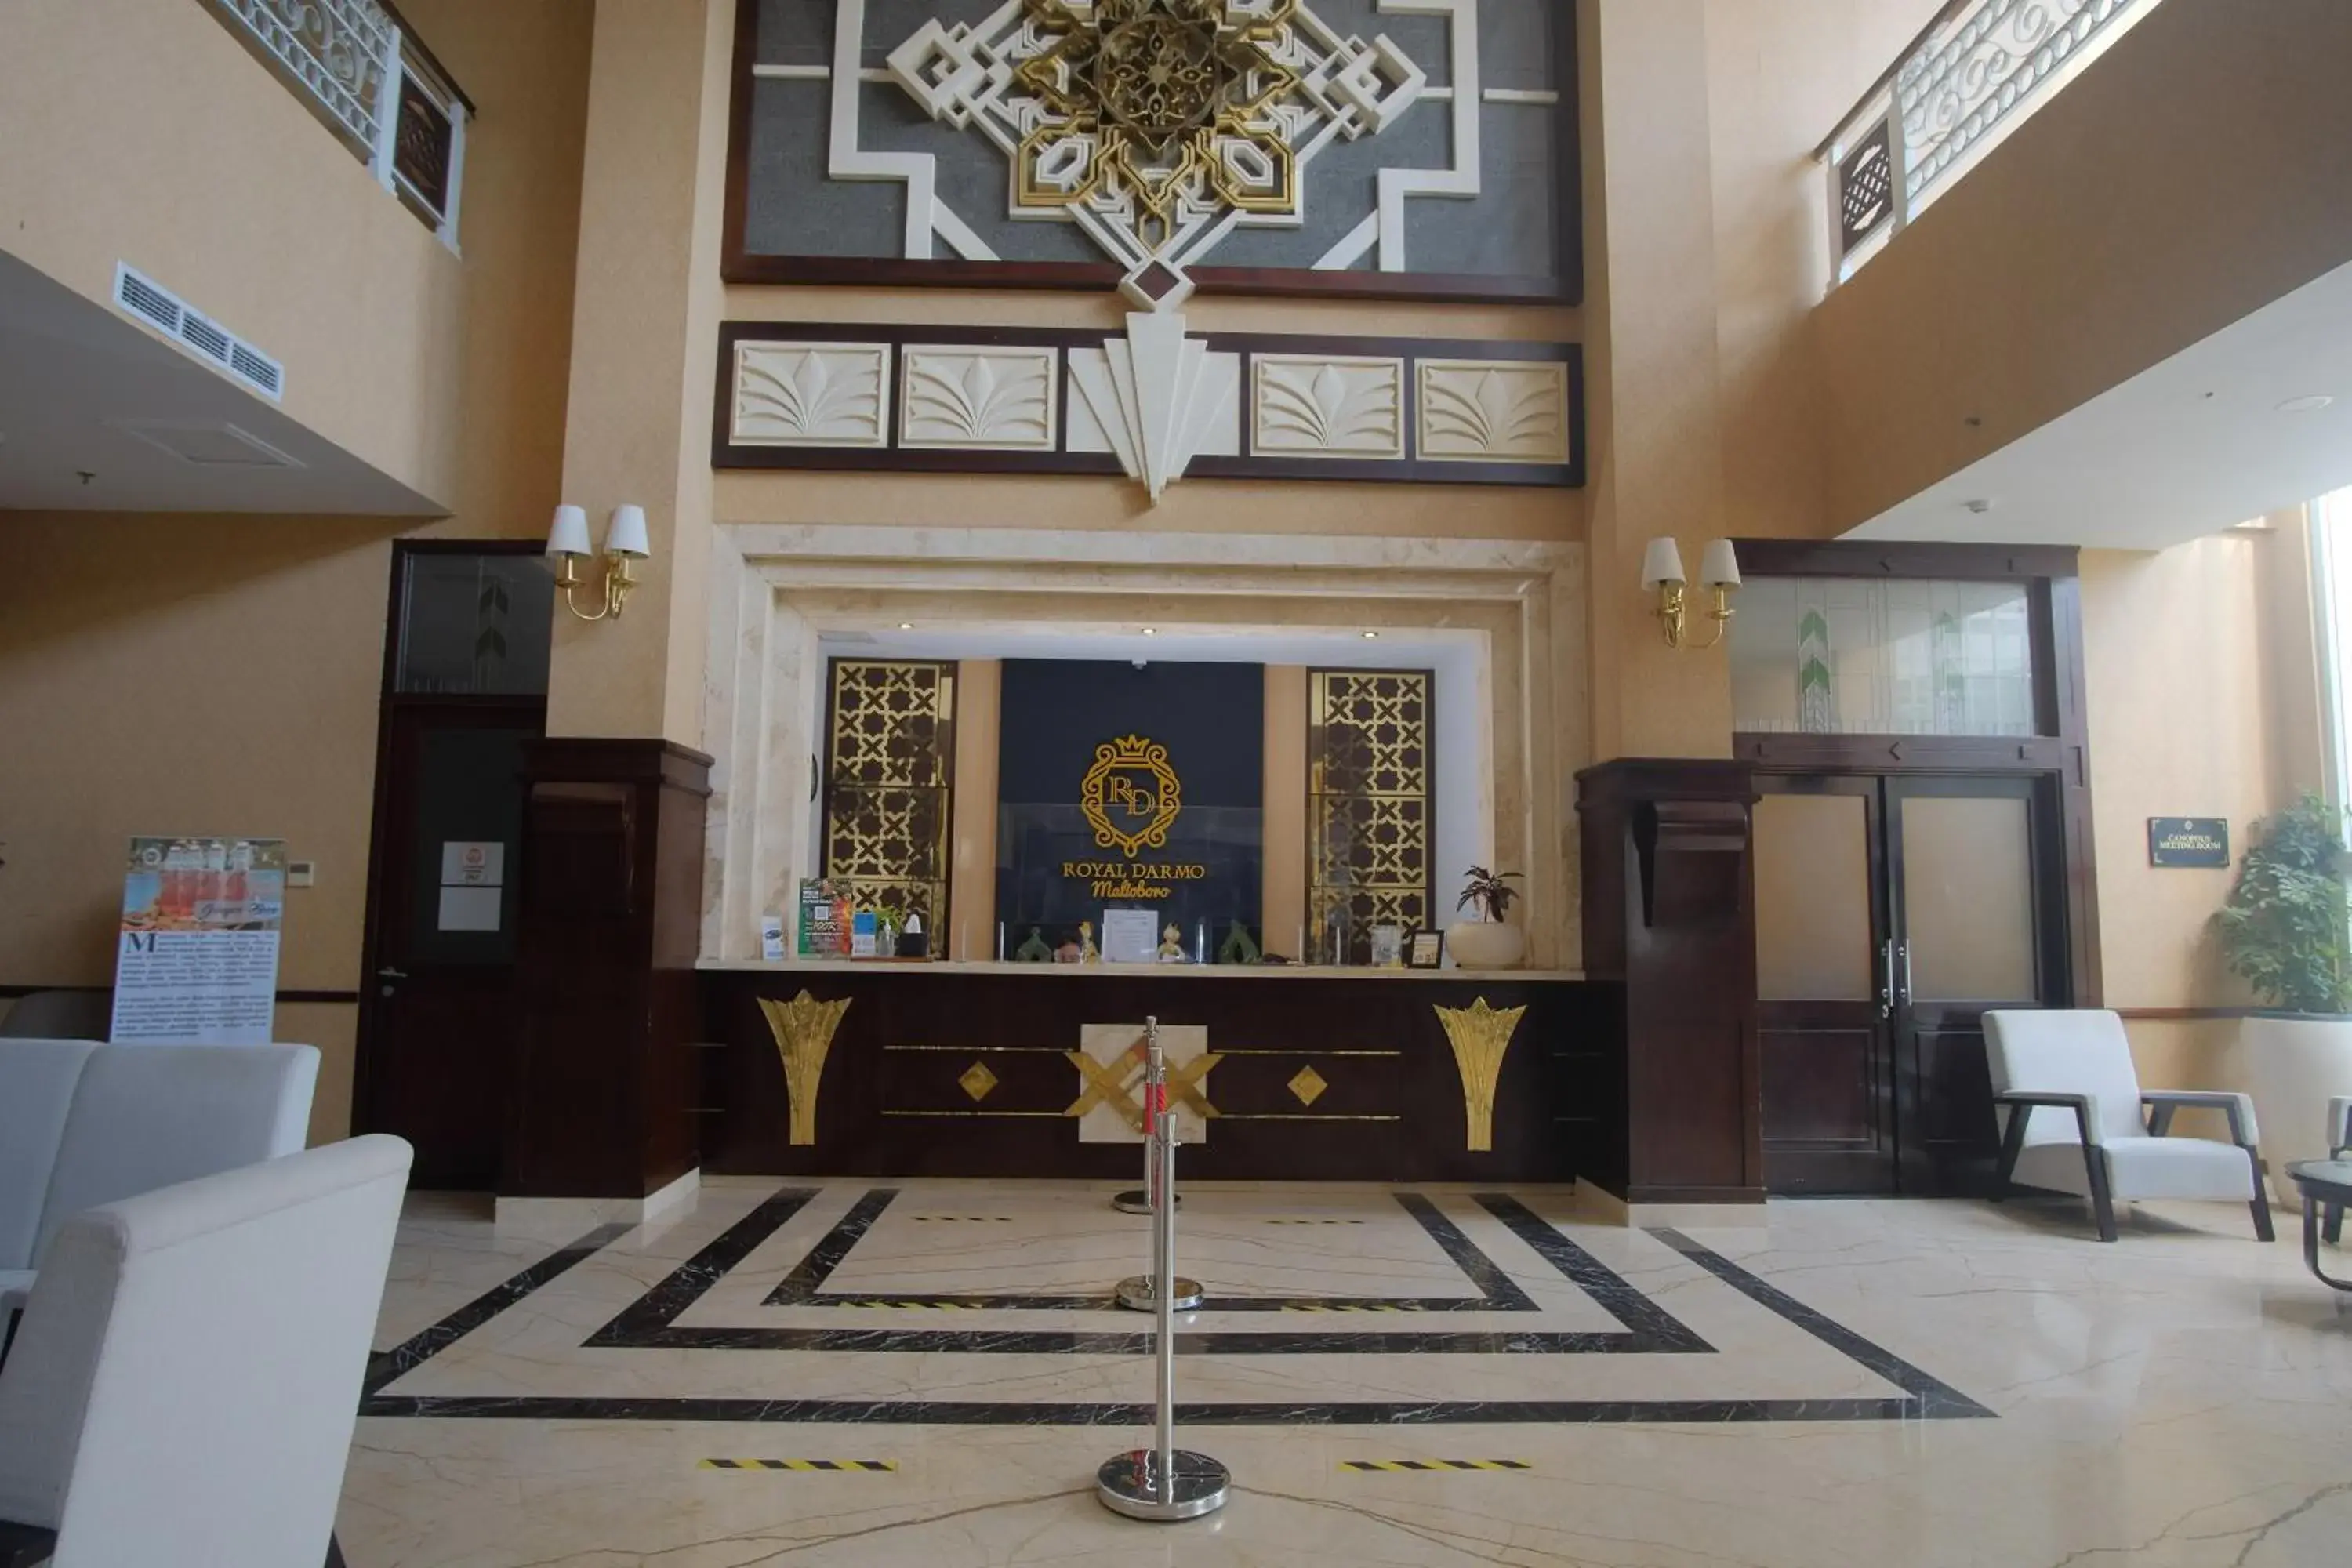 Lobby or reception, Lobby/Reception in Royal Darmo Malioboro Hotel